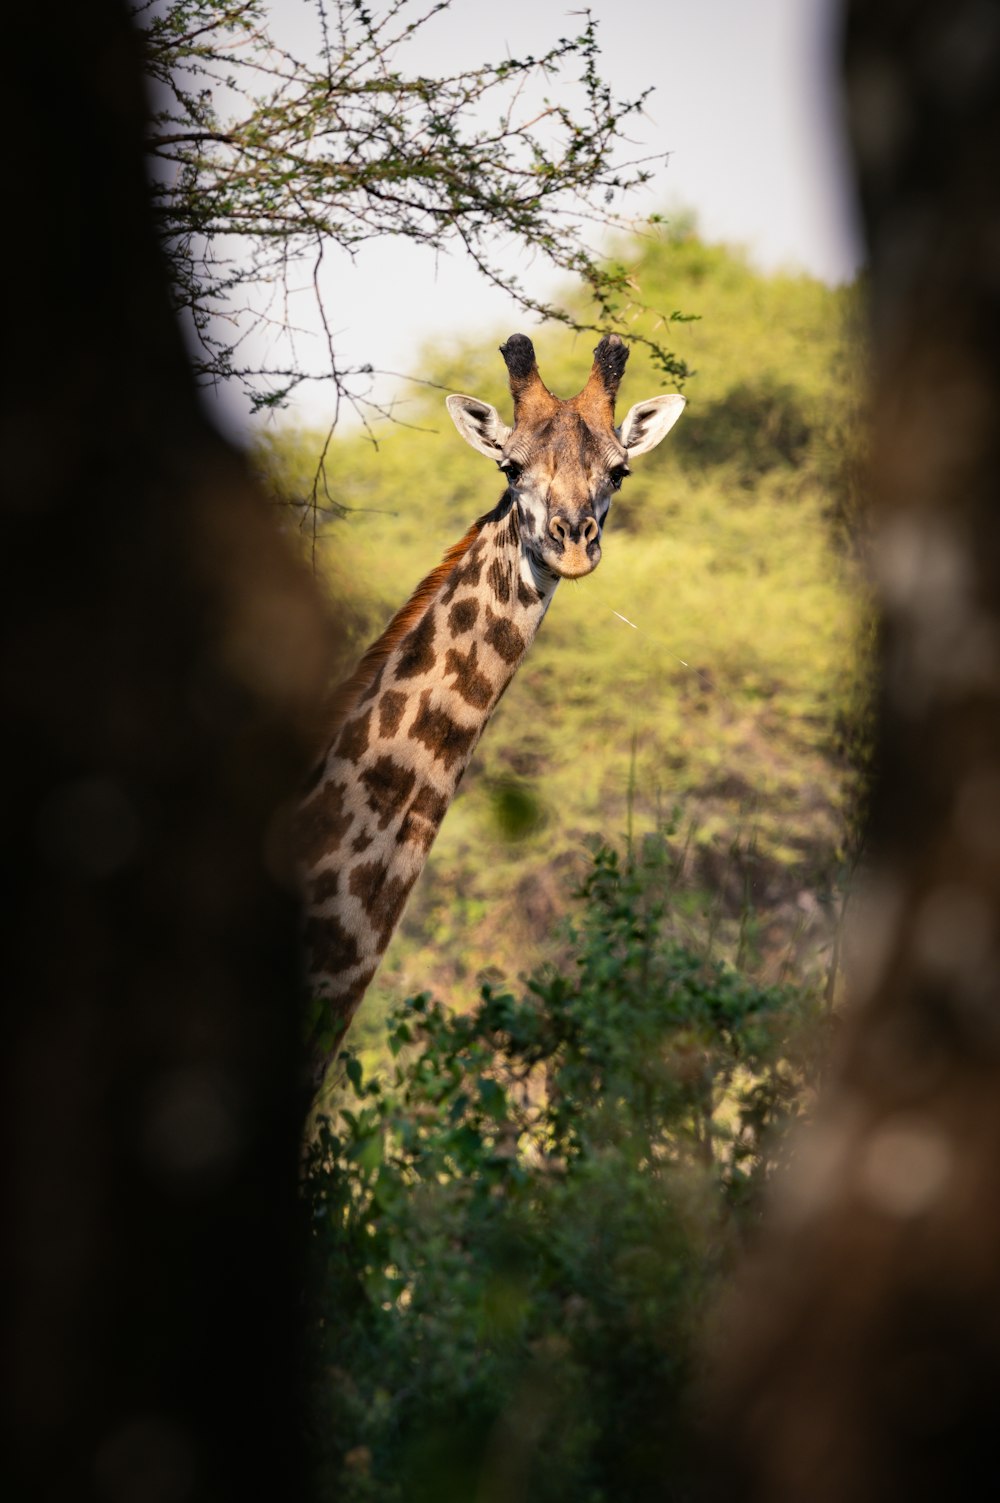 a giraffe standing next to a lush green forest